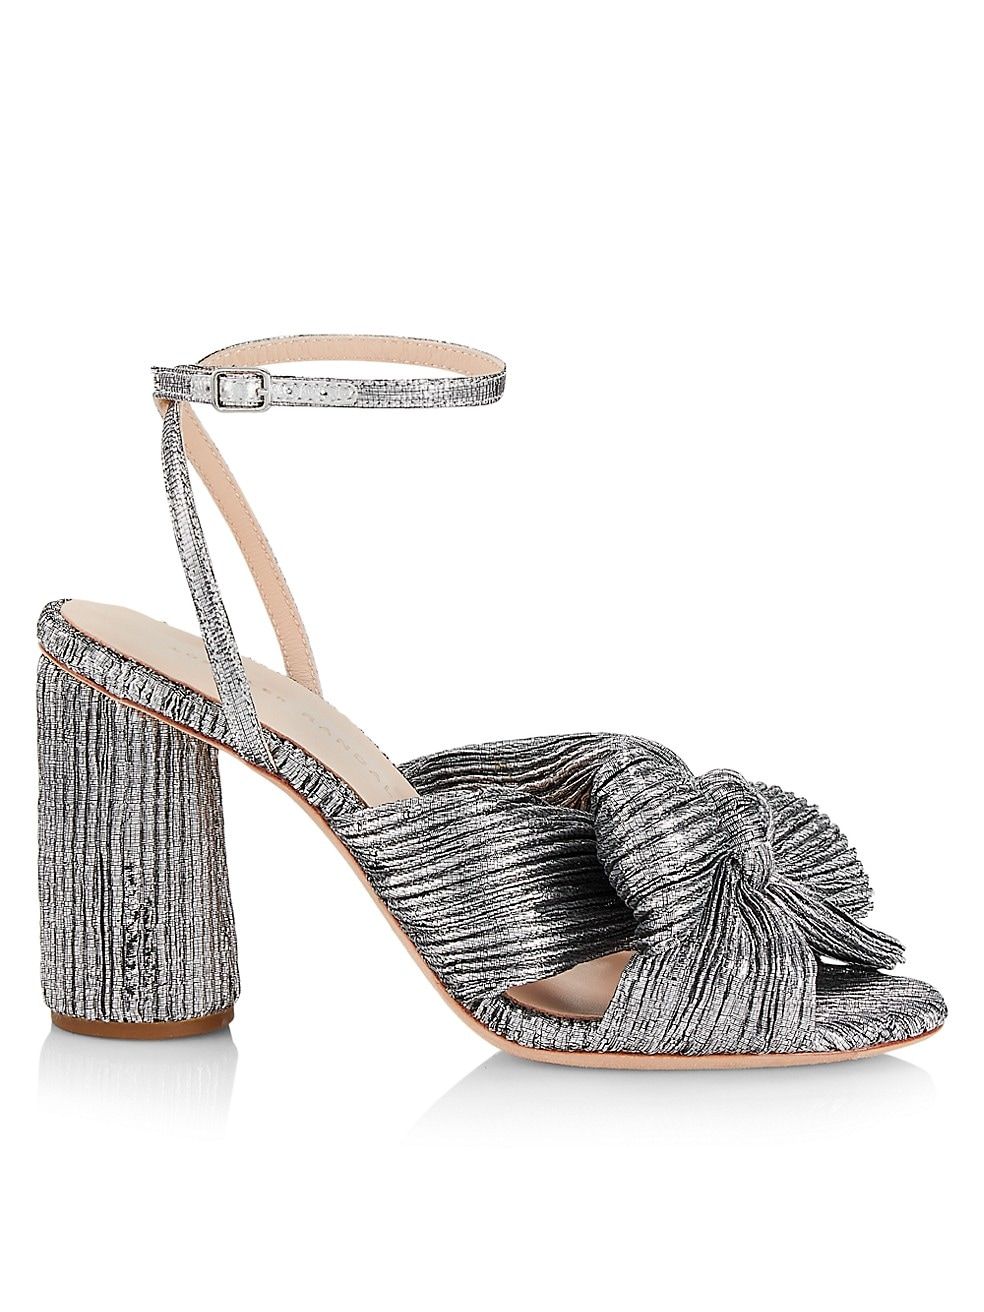 Loeffler Randall Camellia Pleated Knot Metallic Sandals | Saks Fifth Avenue